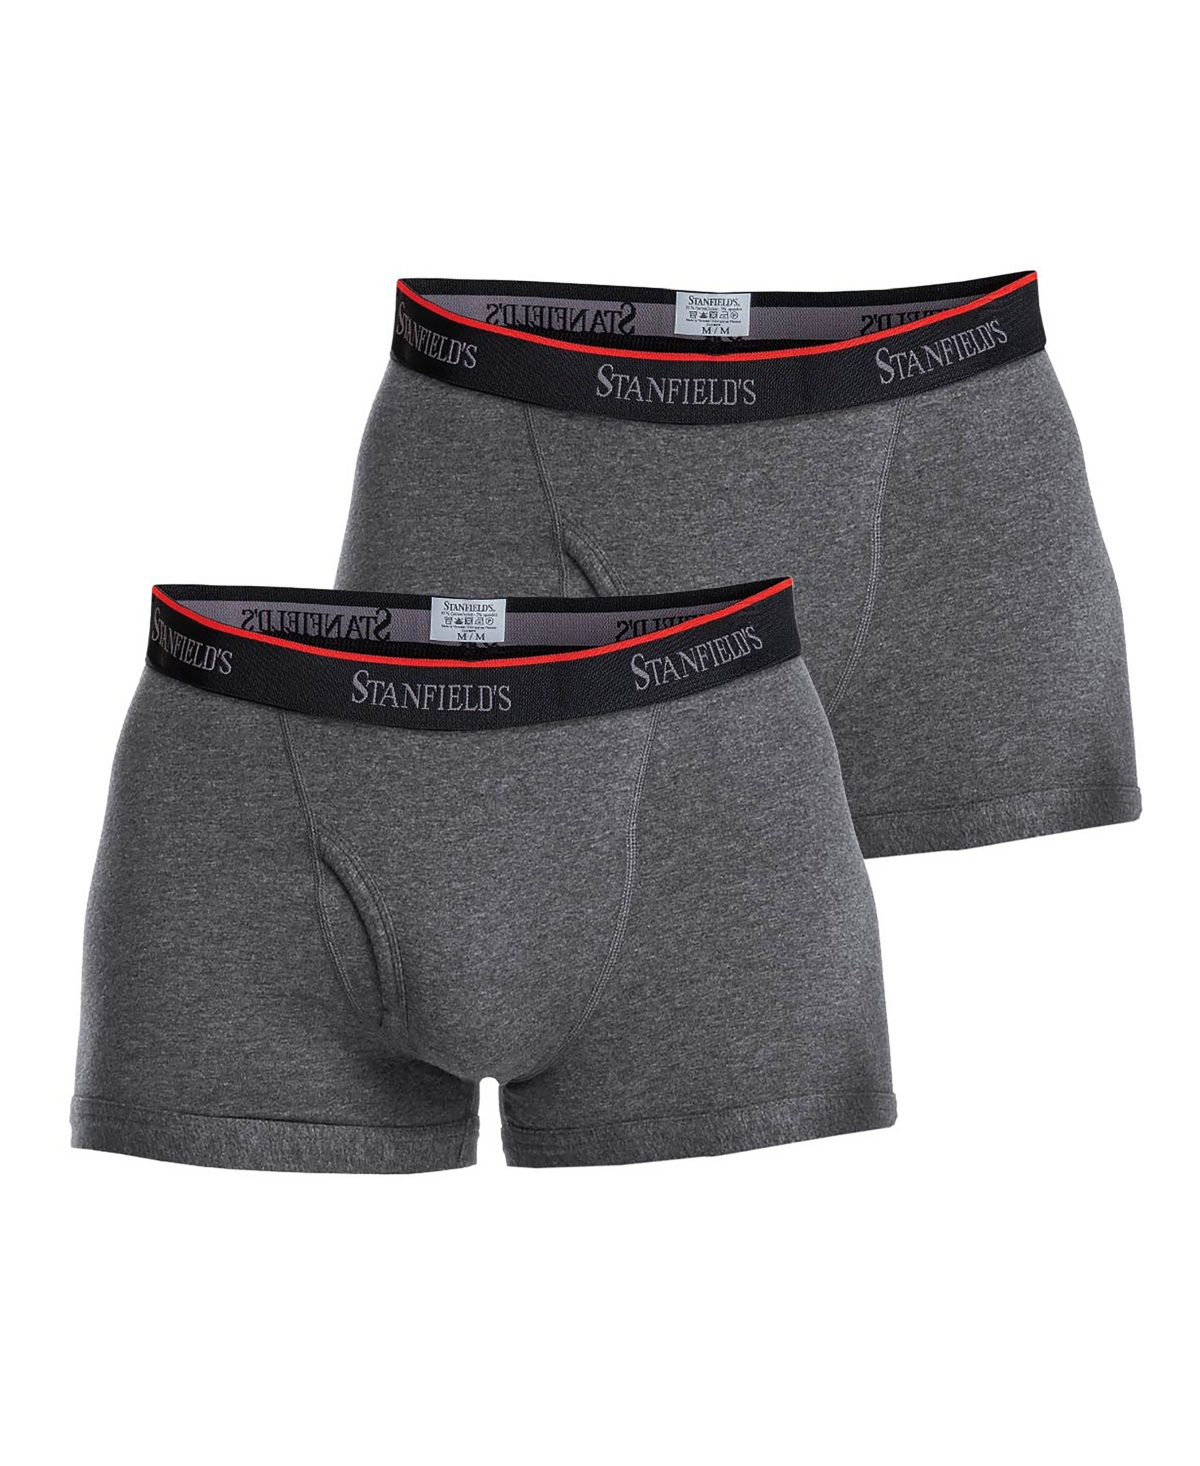 Stanfield's Cotton Stretch Men's 2 Pack Trunk Underwear In Graphite